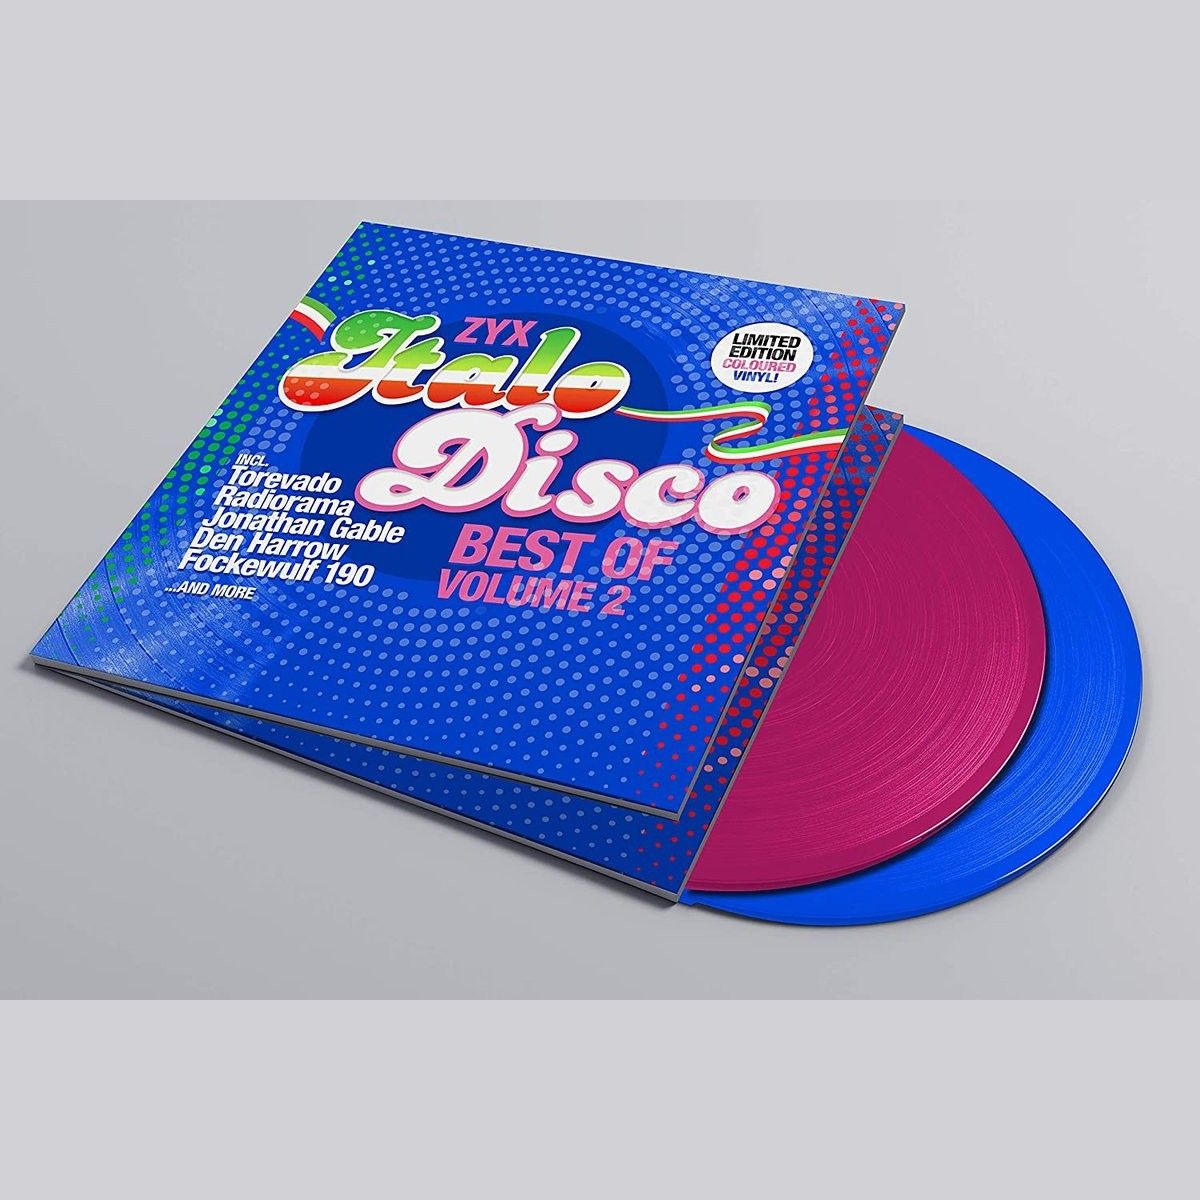 Итало диско. Italo Disco Vol 2. Va - ZYX Italo Disco Spacesynth collection 2. The best of Italo Disco. Italo disco new generation vol 24